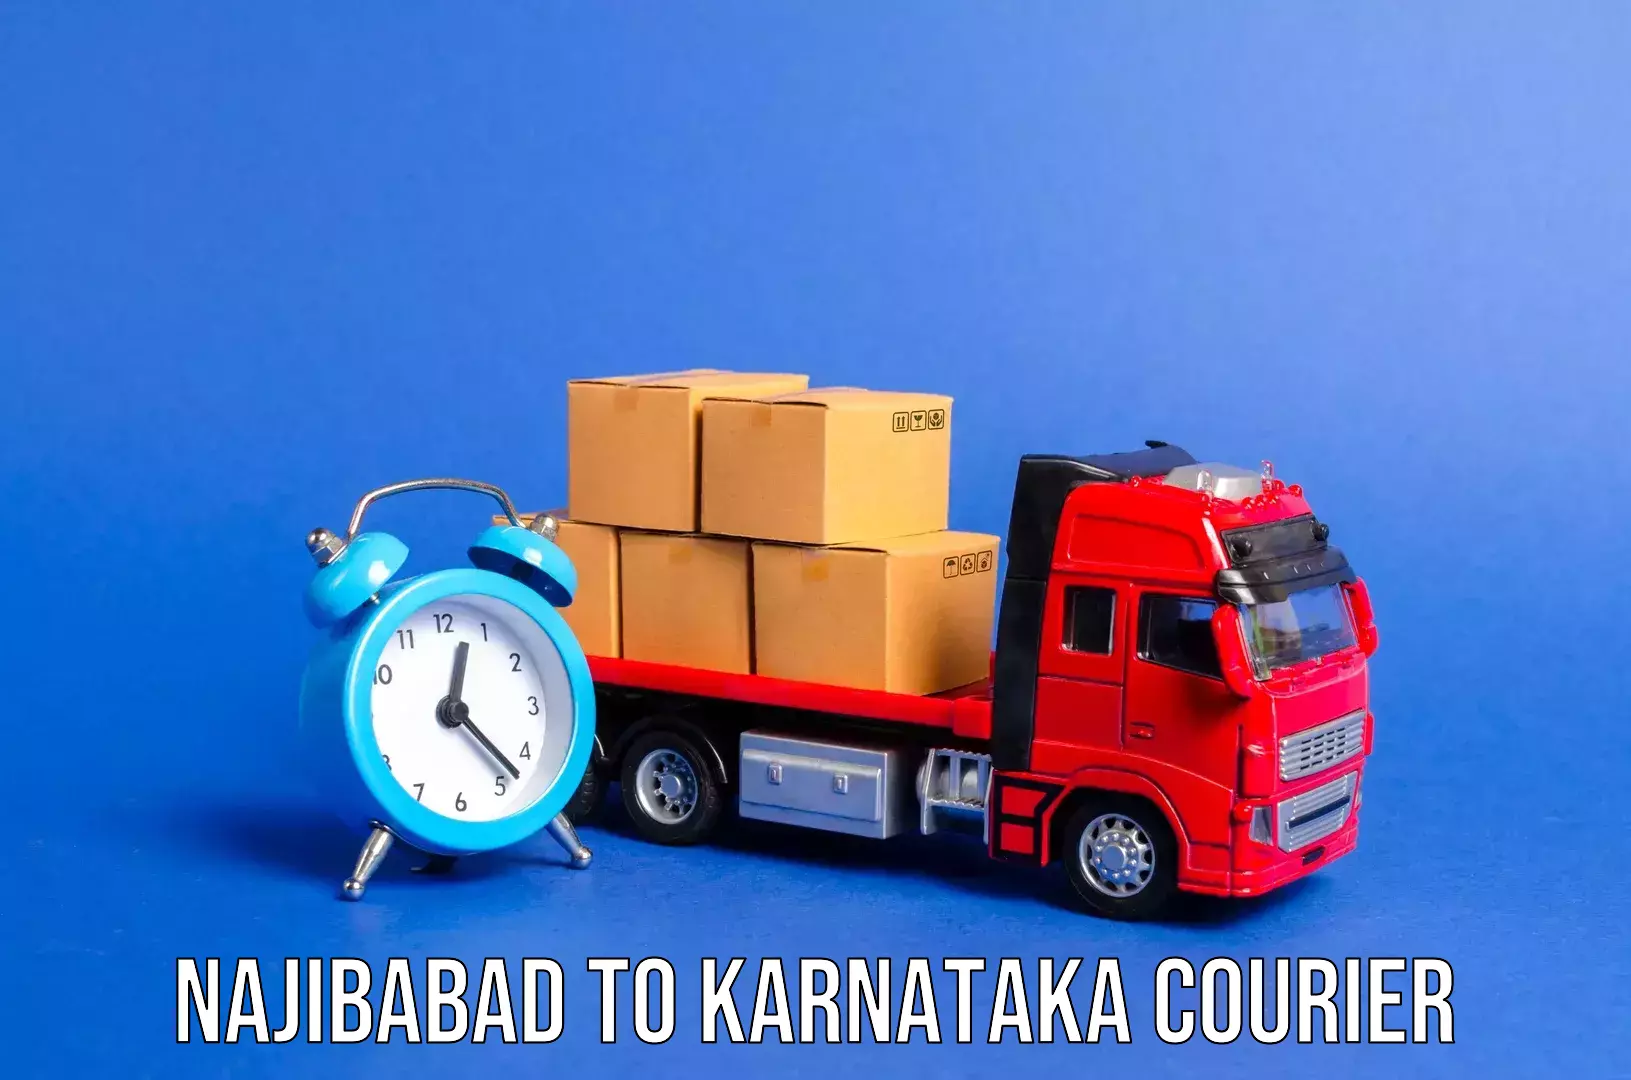 Suburban luggage delivery Najibabad to Karnataka